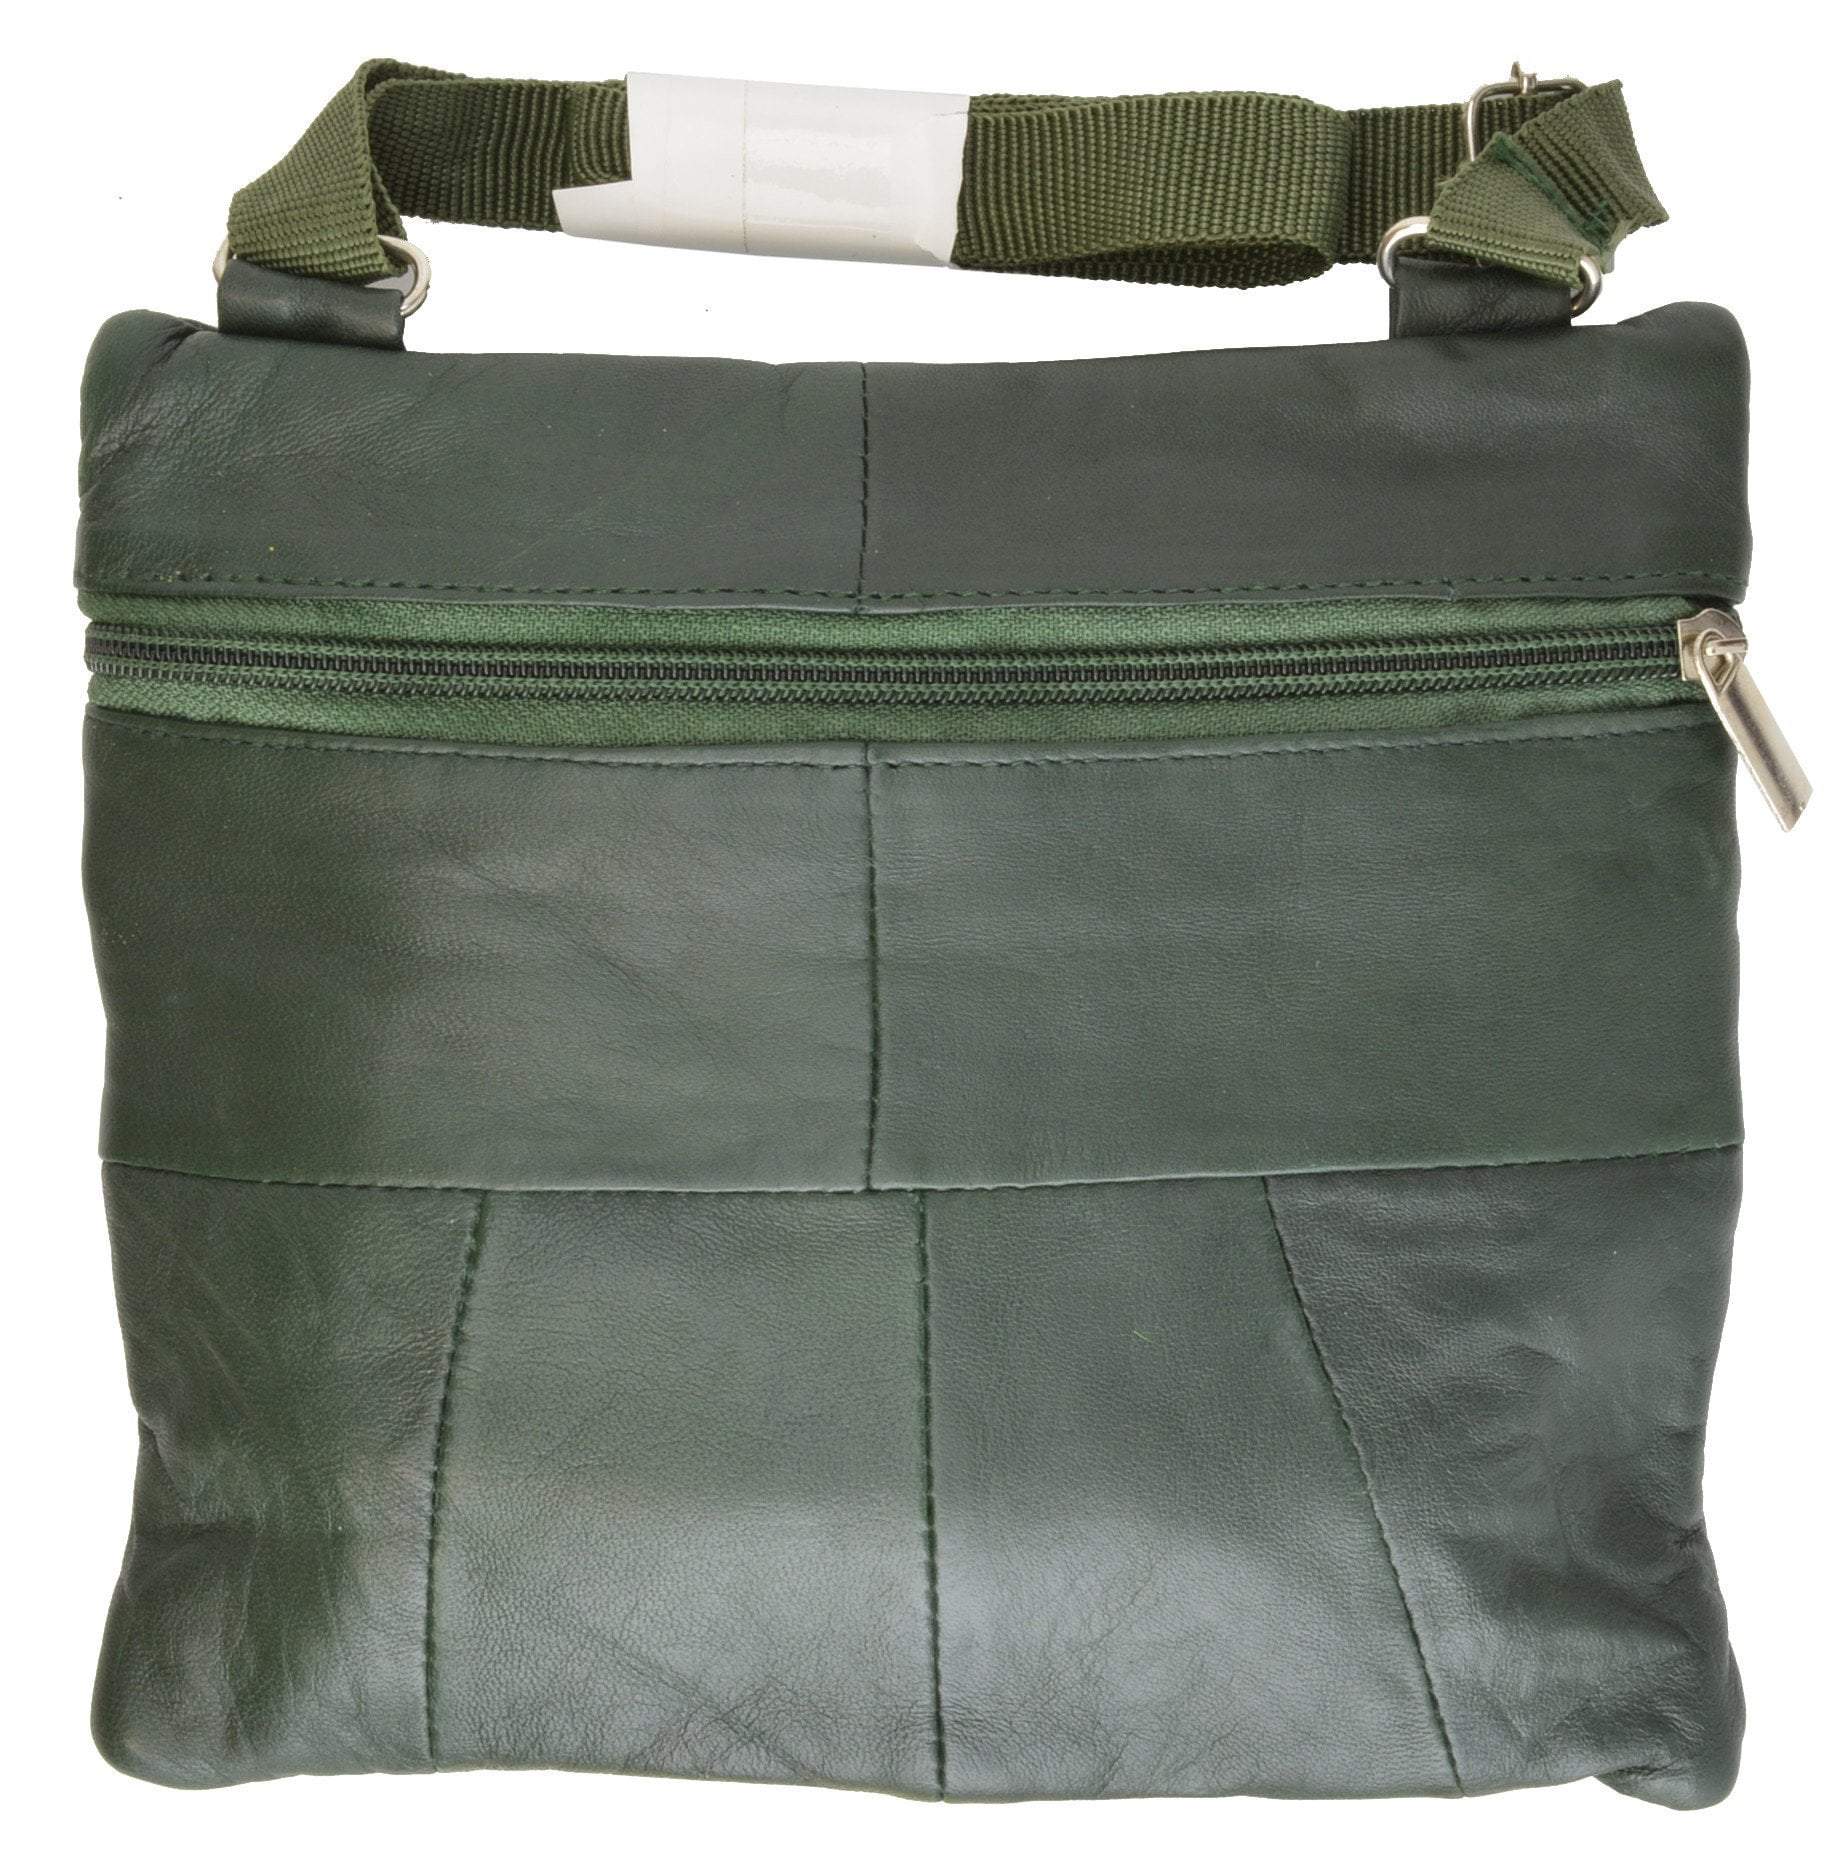 Soft Polochon MM A05 - Men - Bags